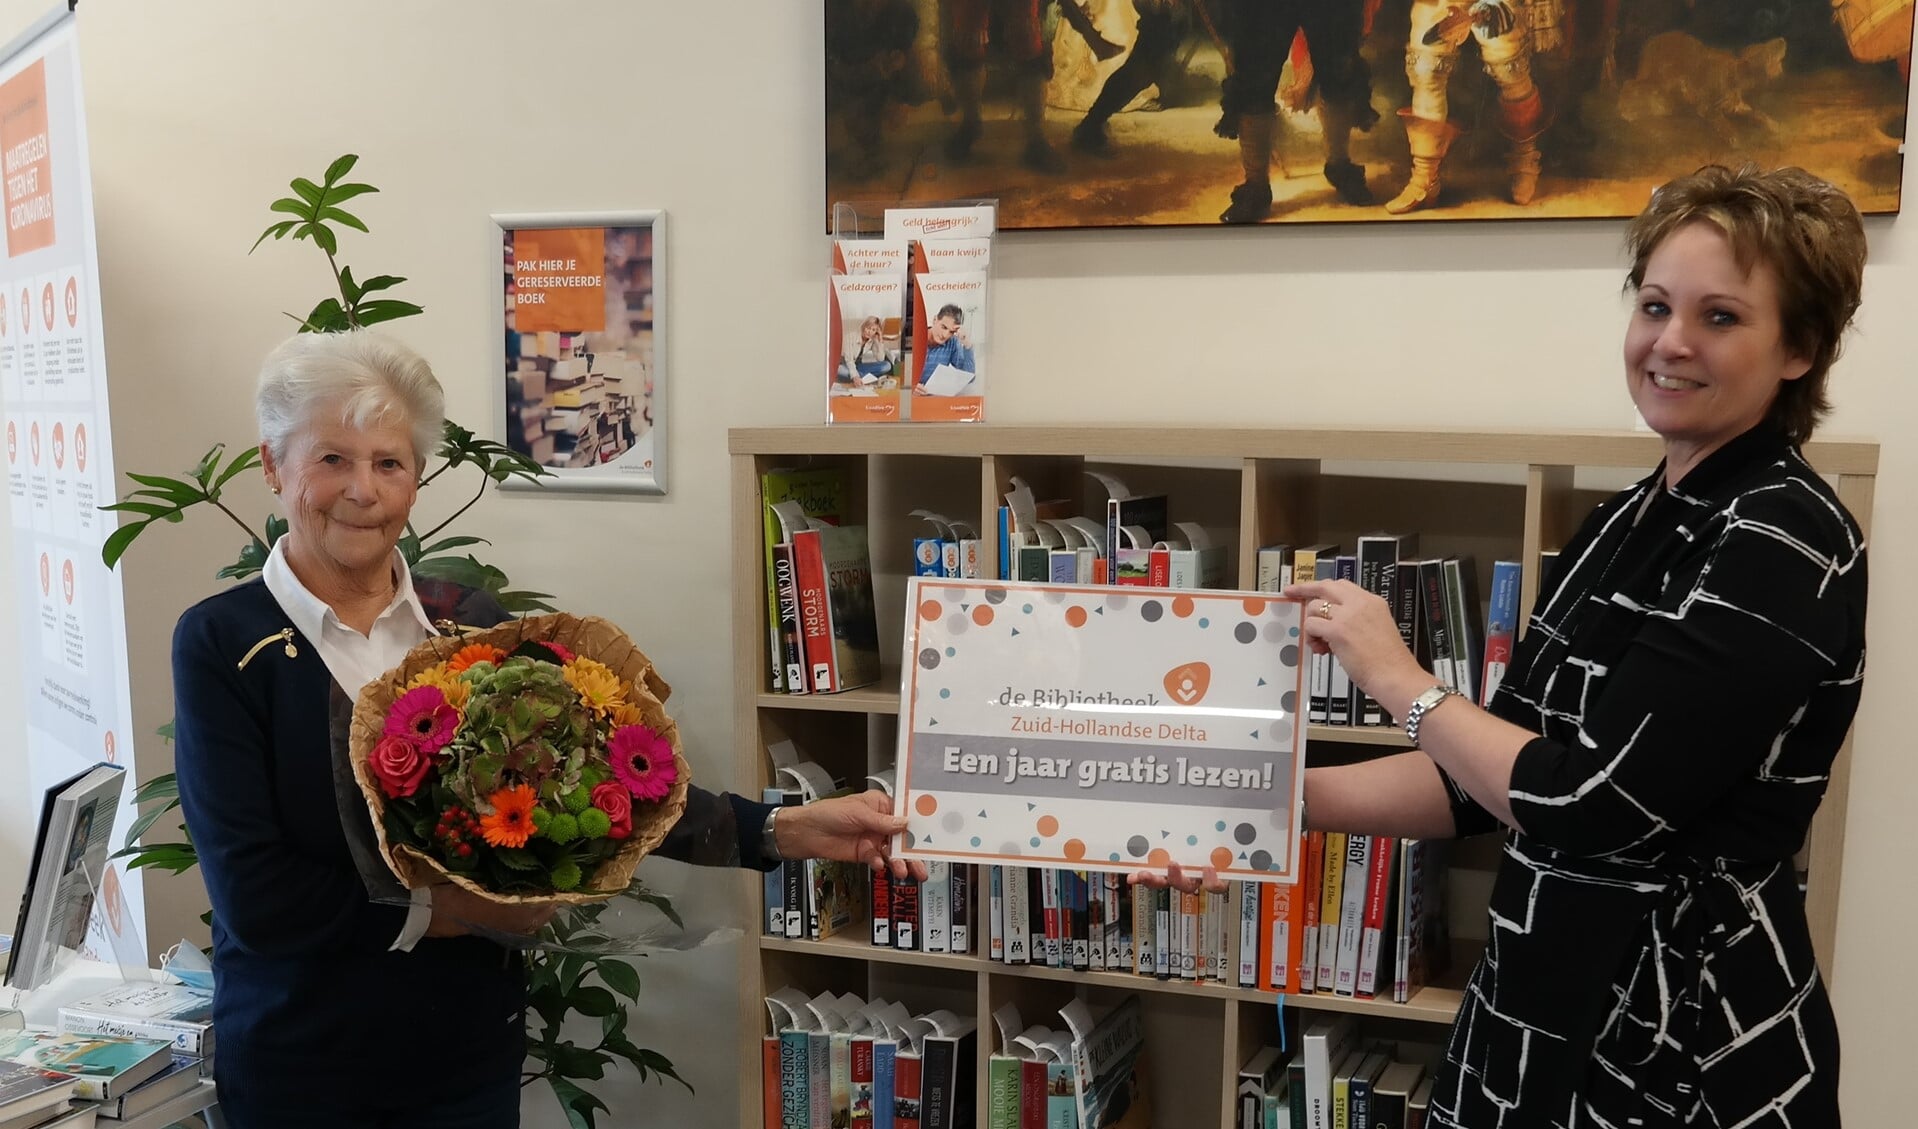 Op dinsdag 20 oktober ontving mevrouw Tuns uit Oude-Tonge haar prijs; een jaar gratis lezen bij Bibliotheek Zuid-Hollandse Delta. 